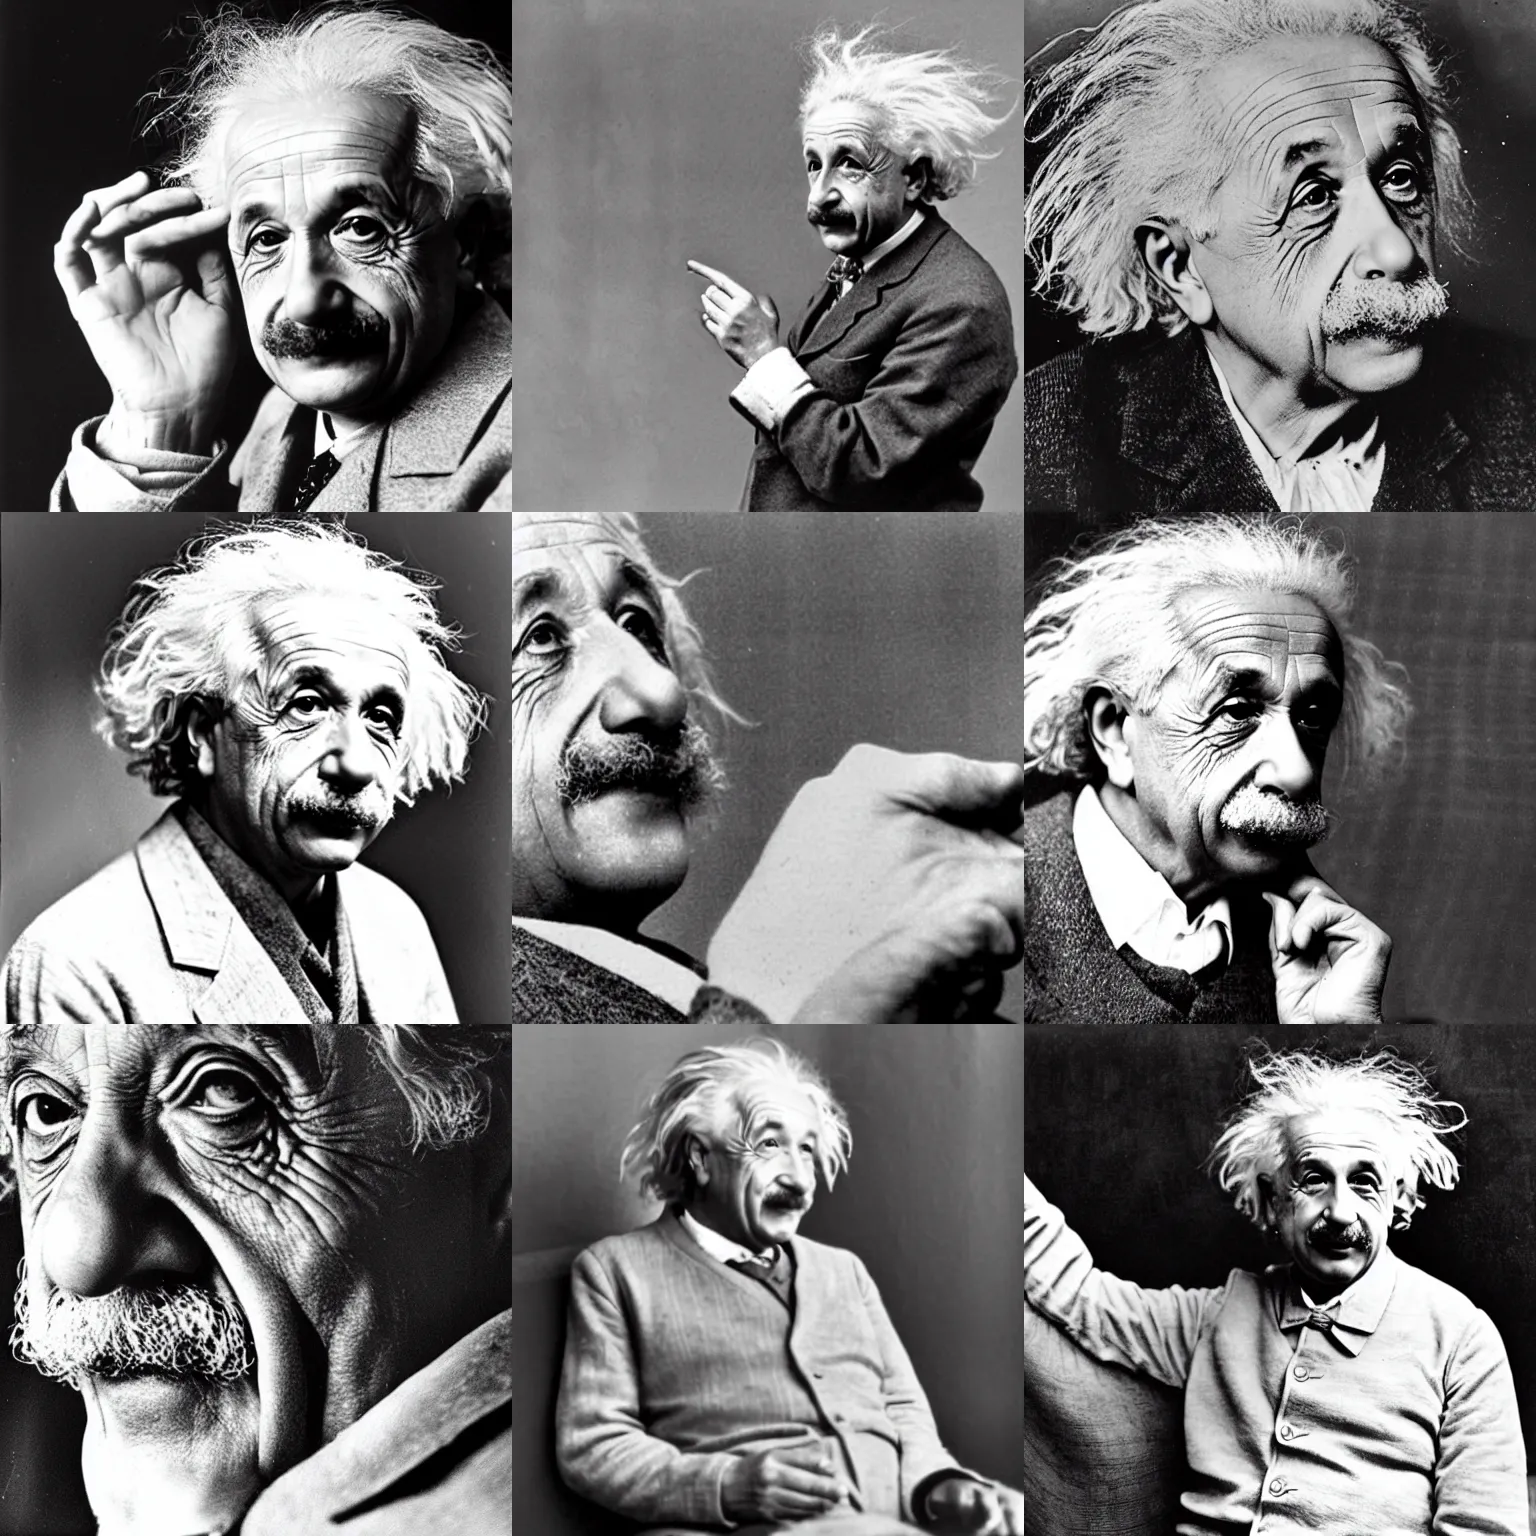 Prompt: Albert Einstein dreaming of relativity